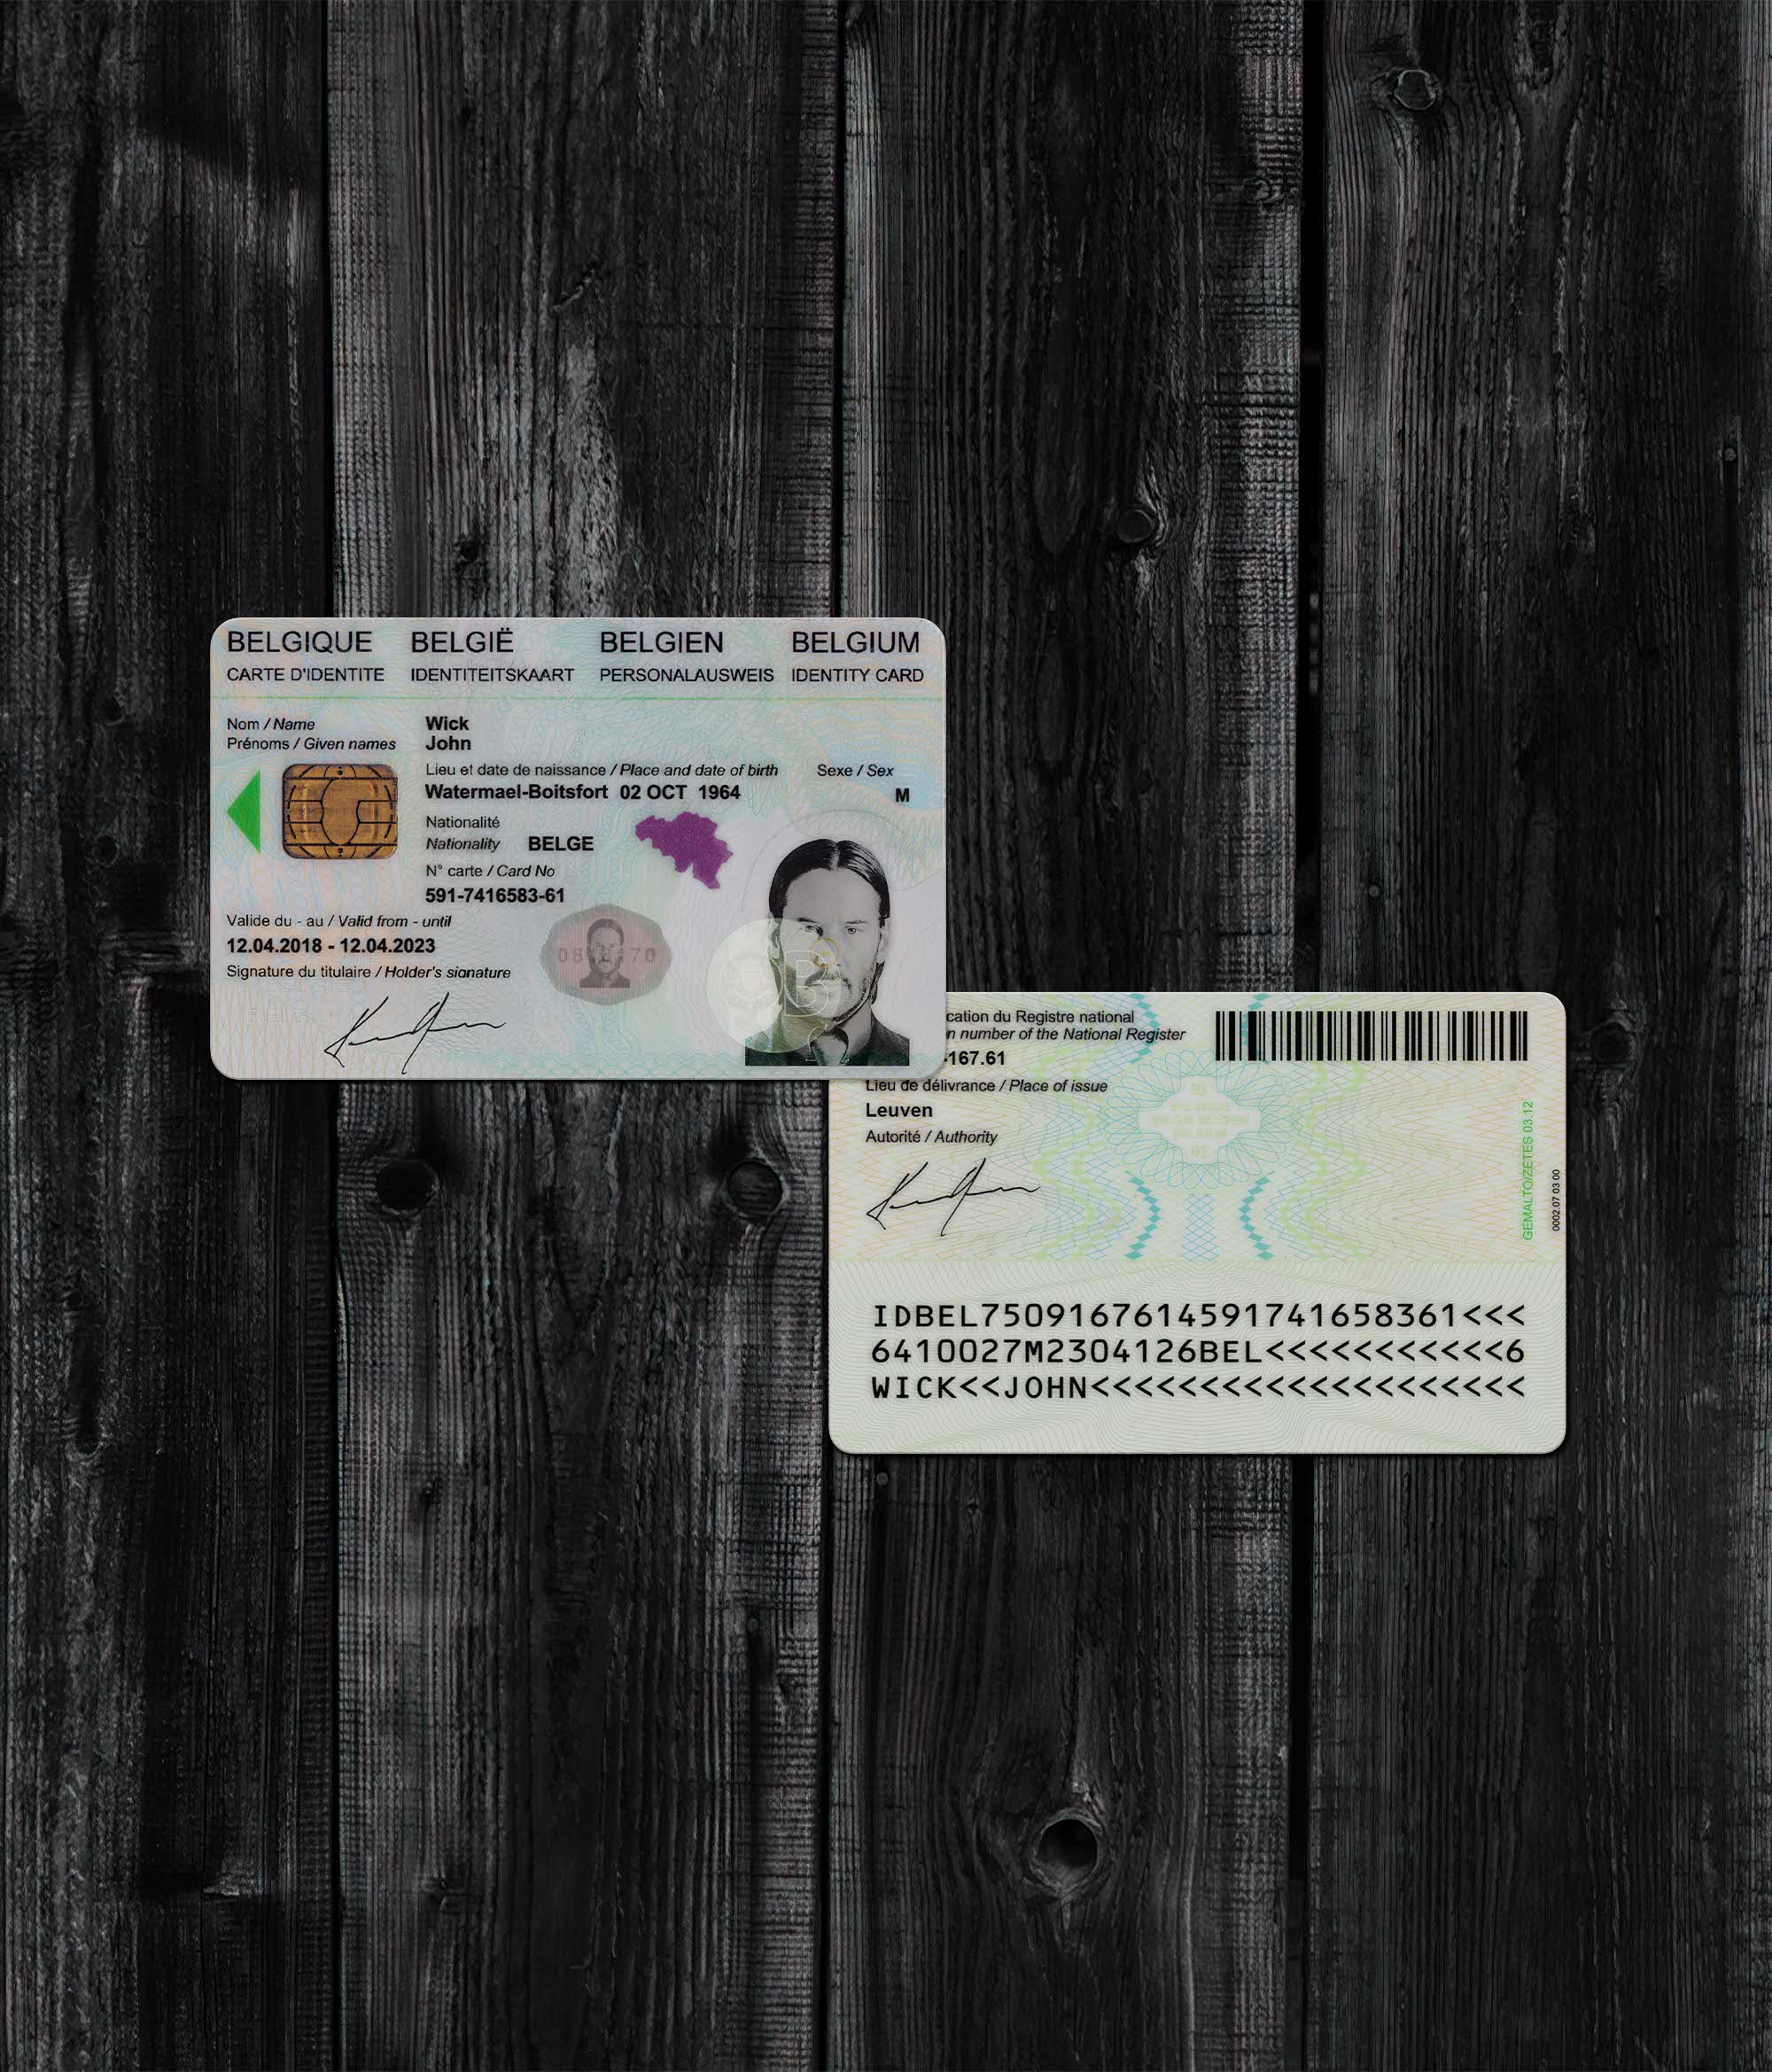 Belgue ID Card 2015+ PSD2